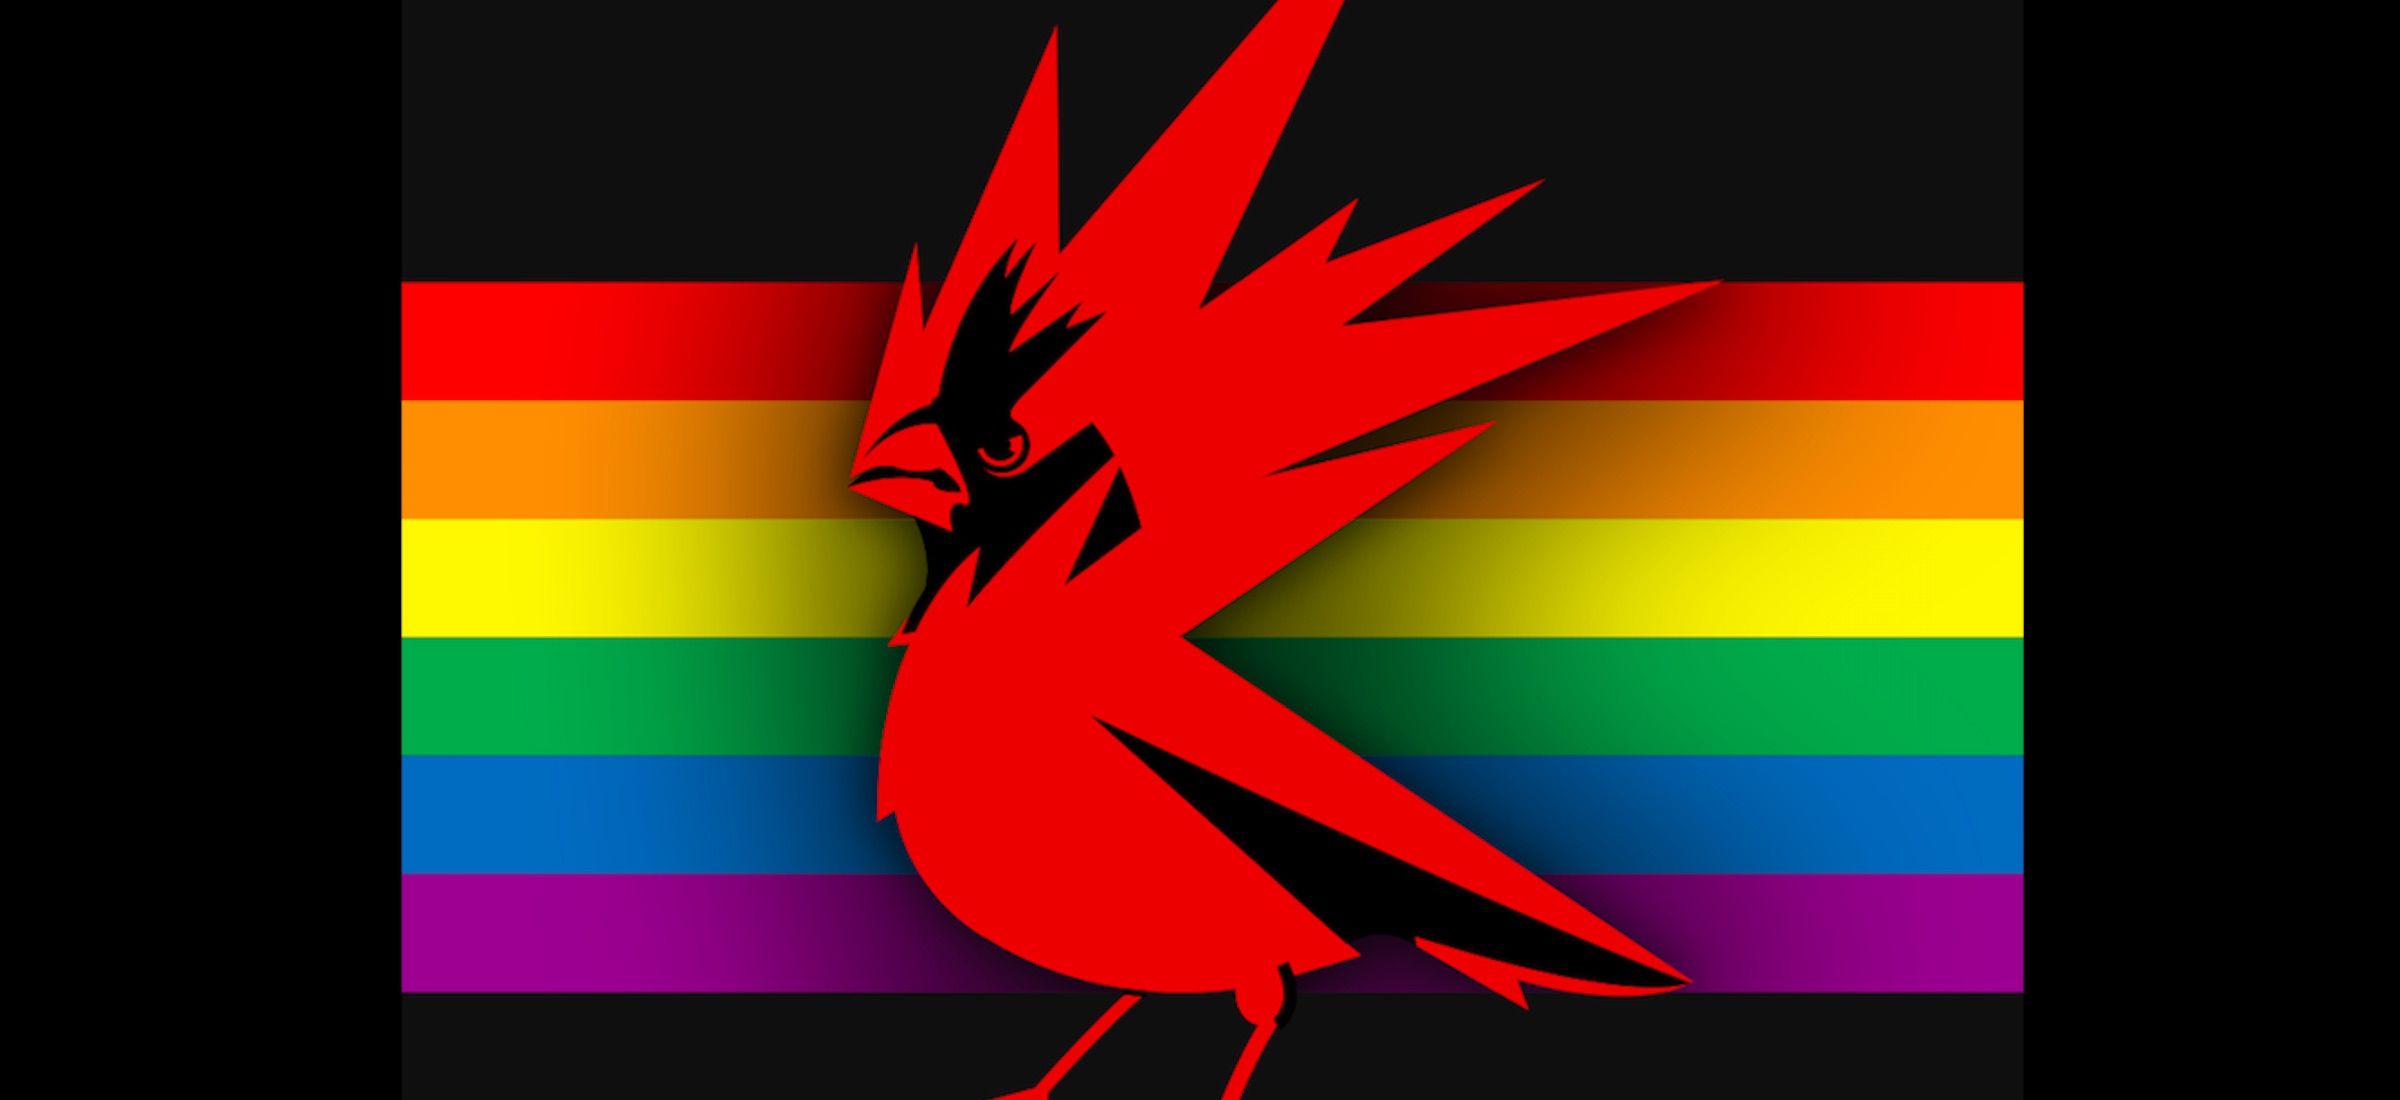 Jak zirytowa homofobw, czyli CDP Red zmieni swoje logo a tysice gosw zakrzykno ”zdrada!”